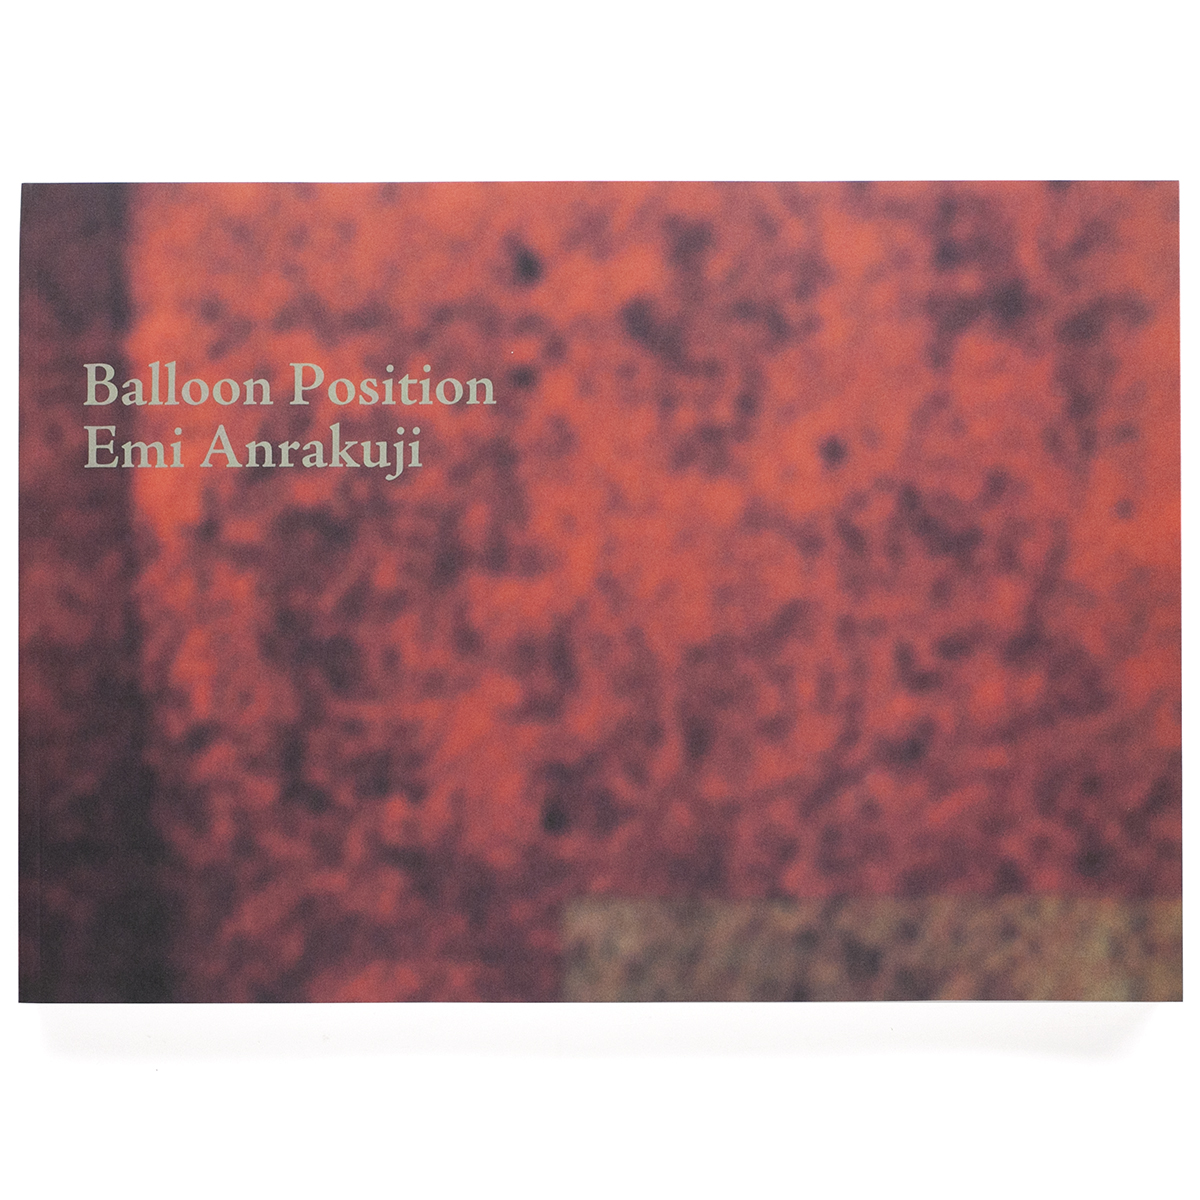 Balloon Position - Emi Anrakuji